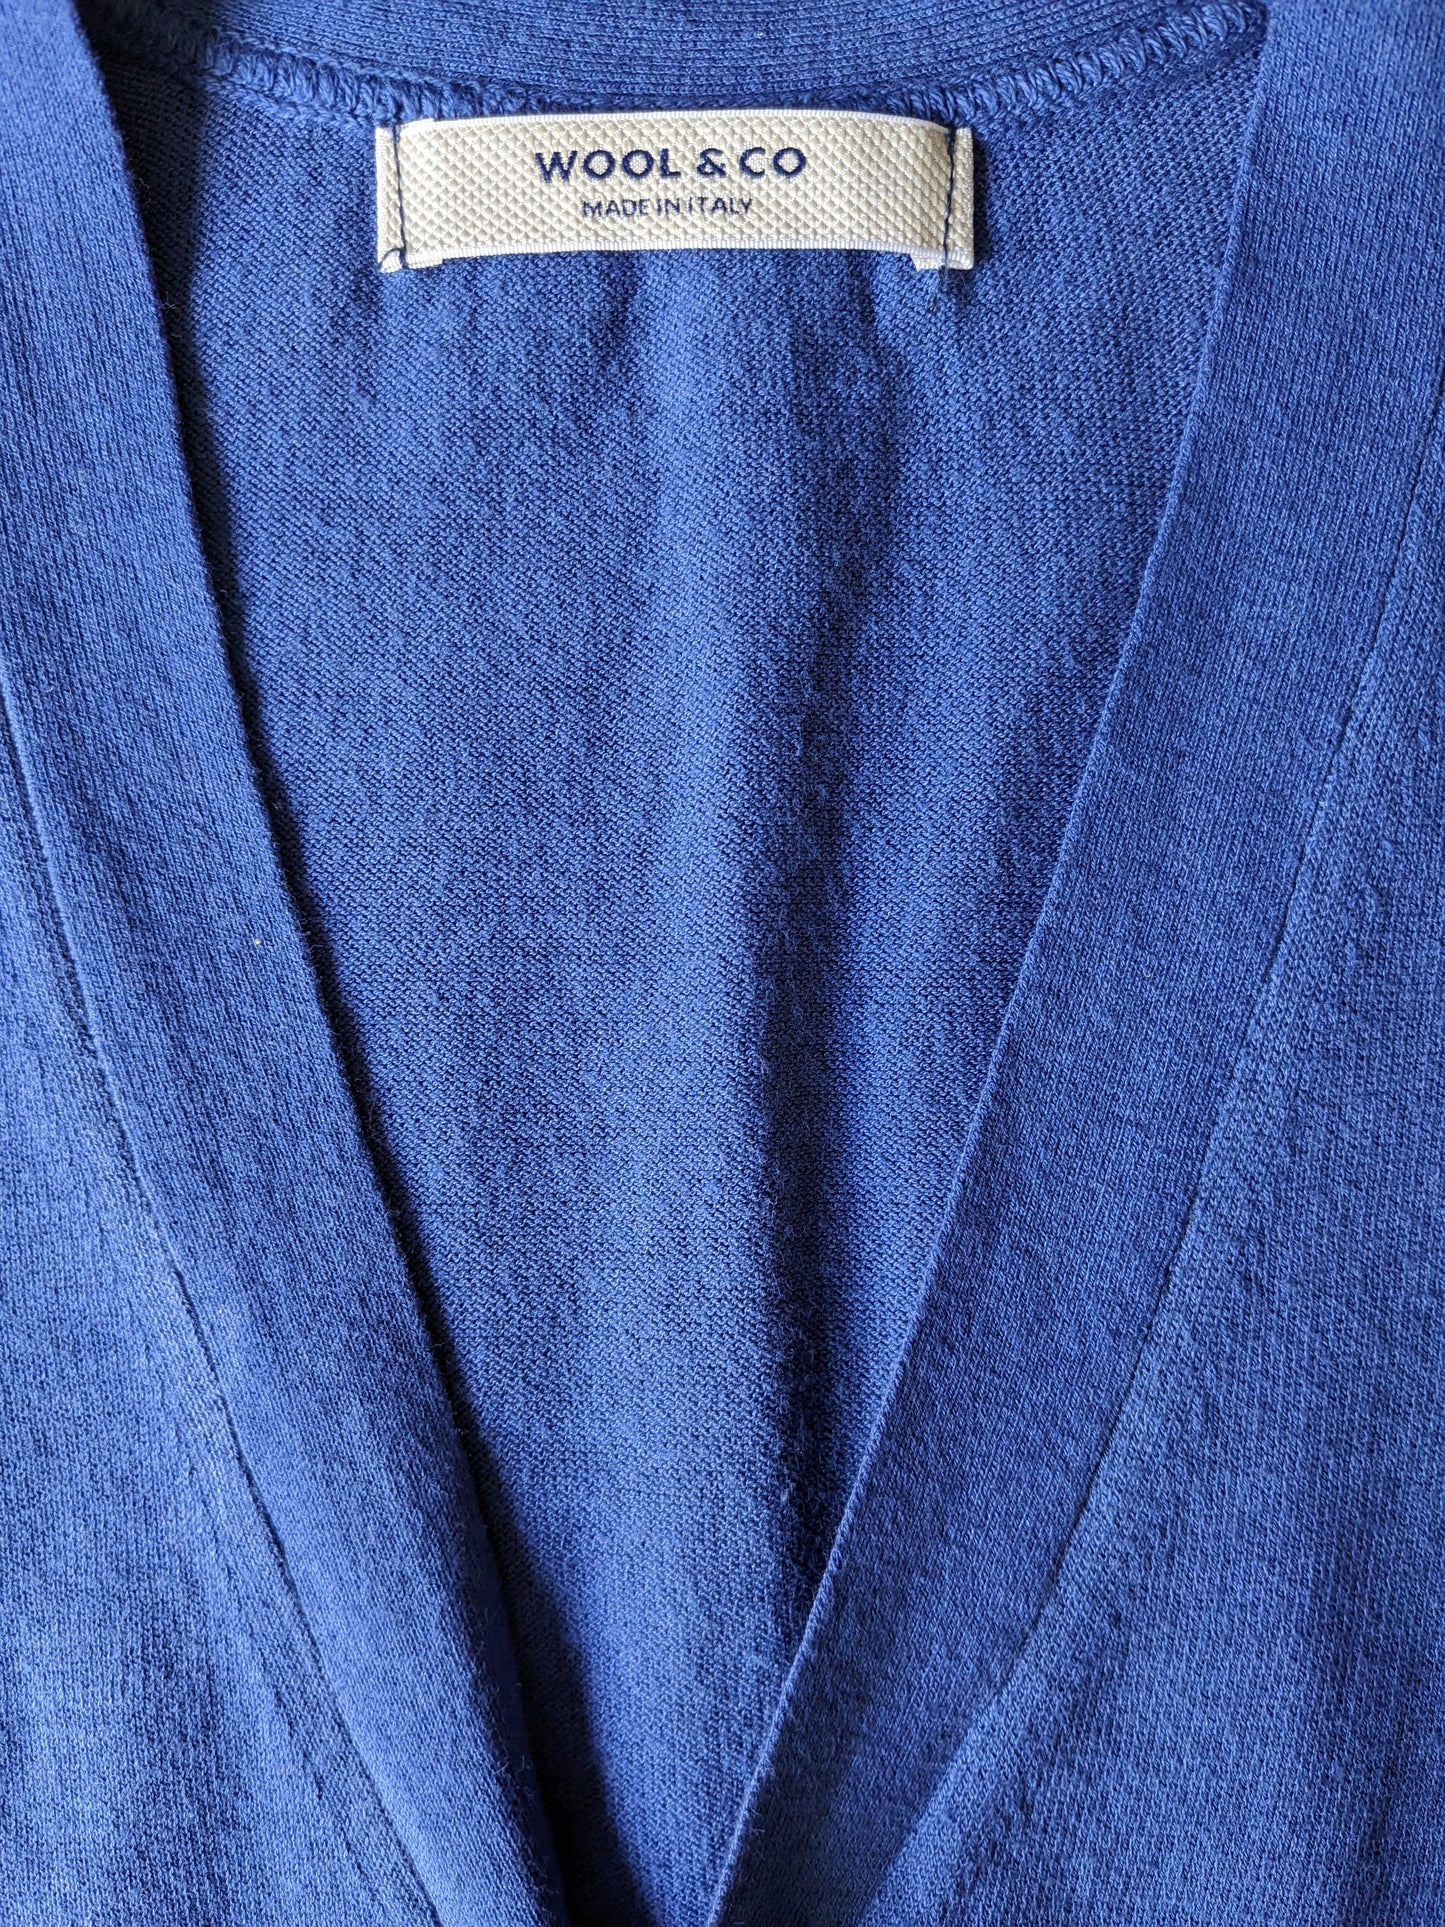 Wolle & Co -Baumwollweste. Blau gefärbt. Größe S.